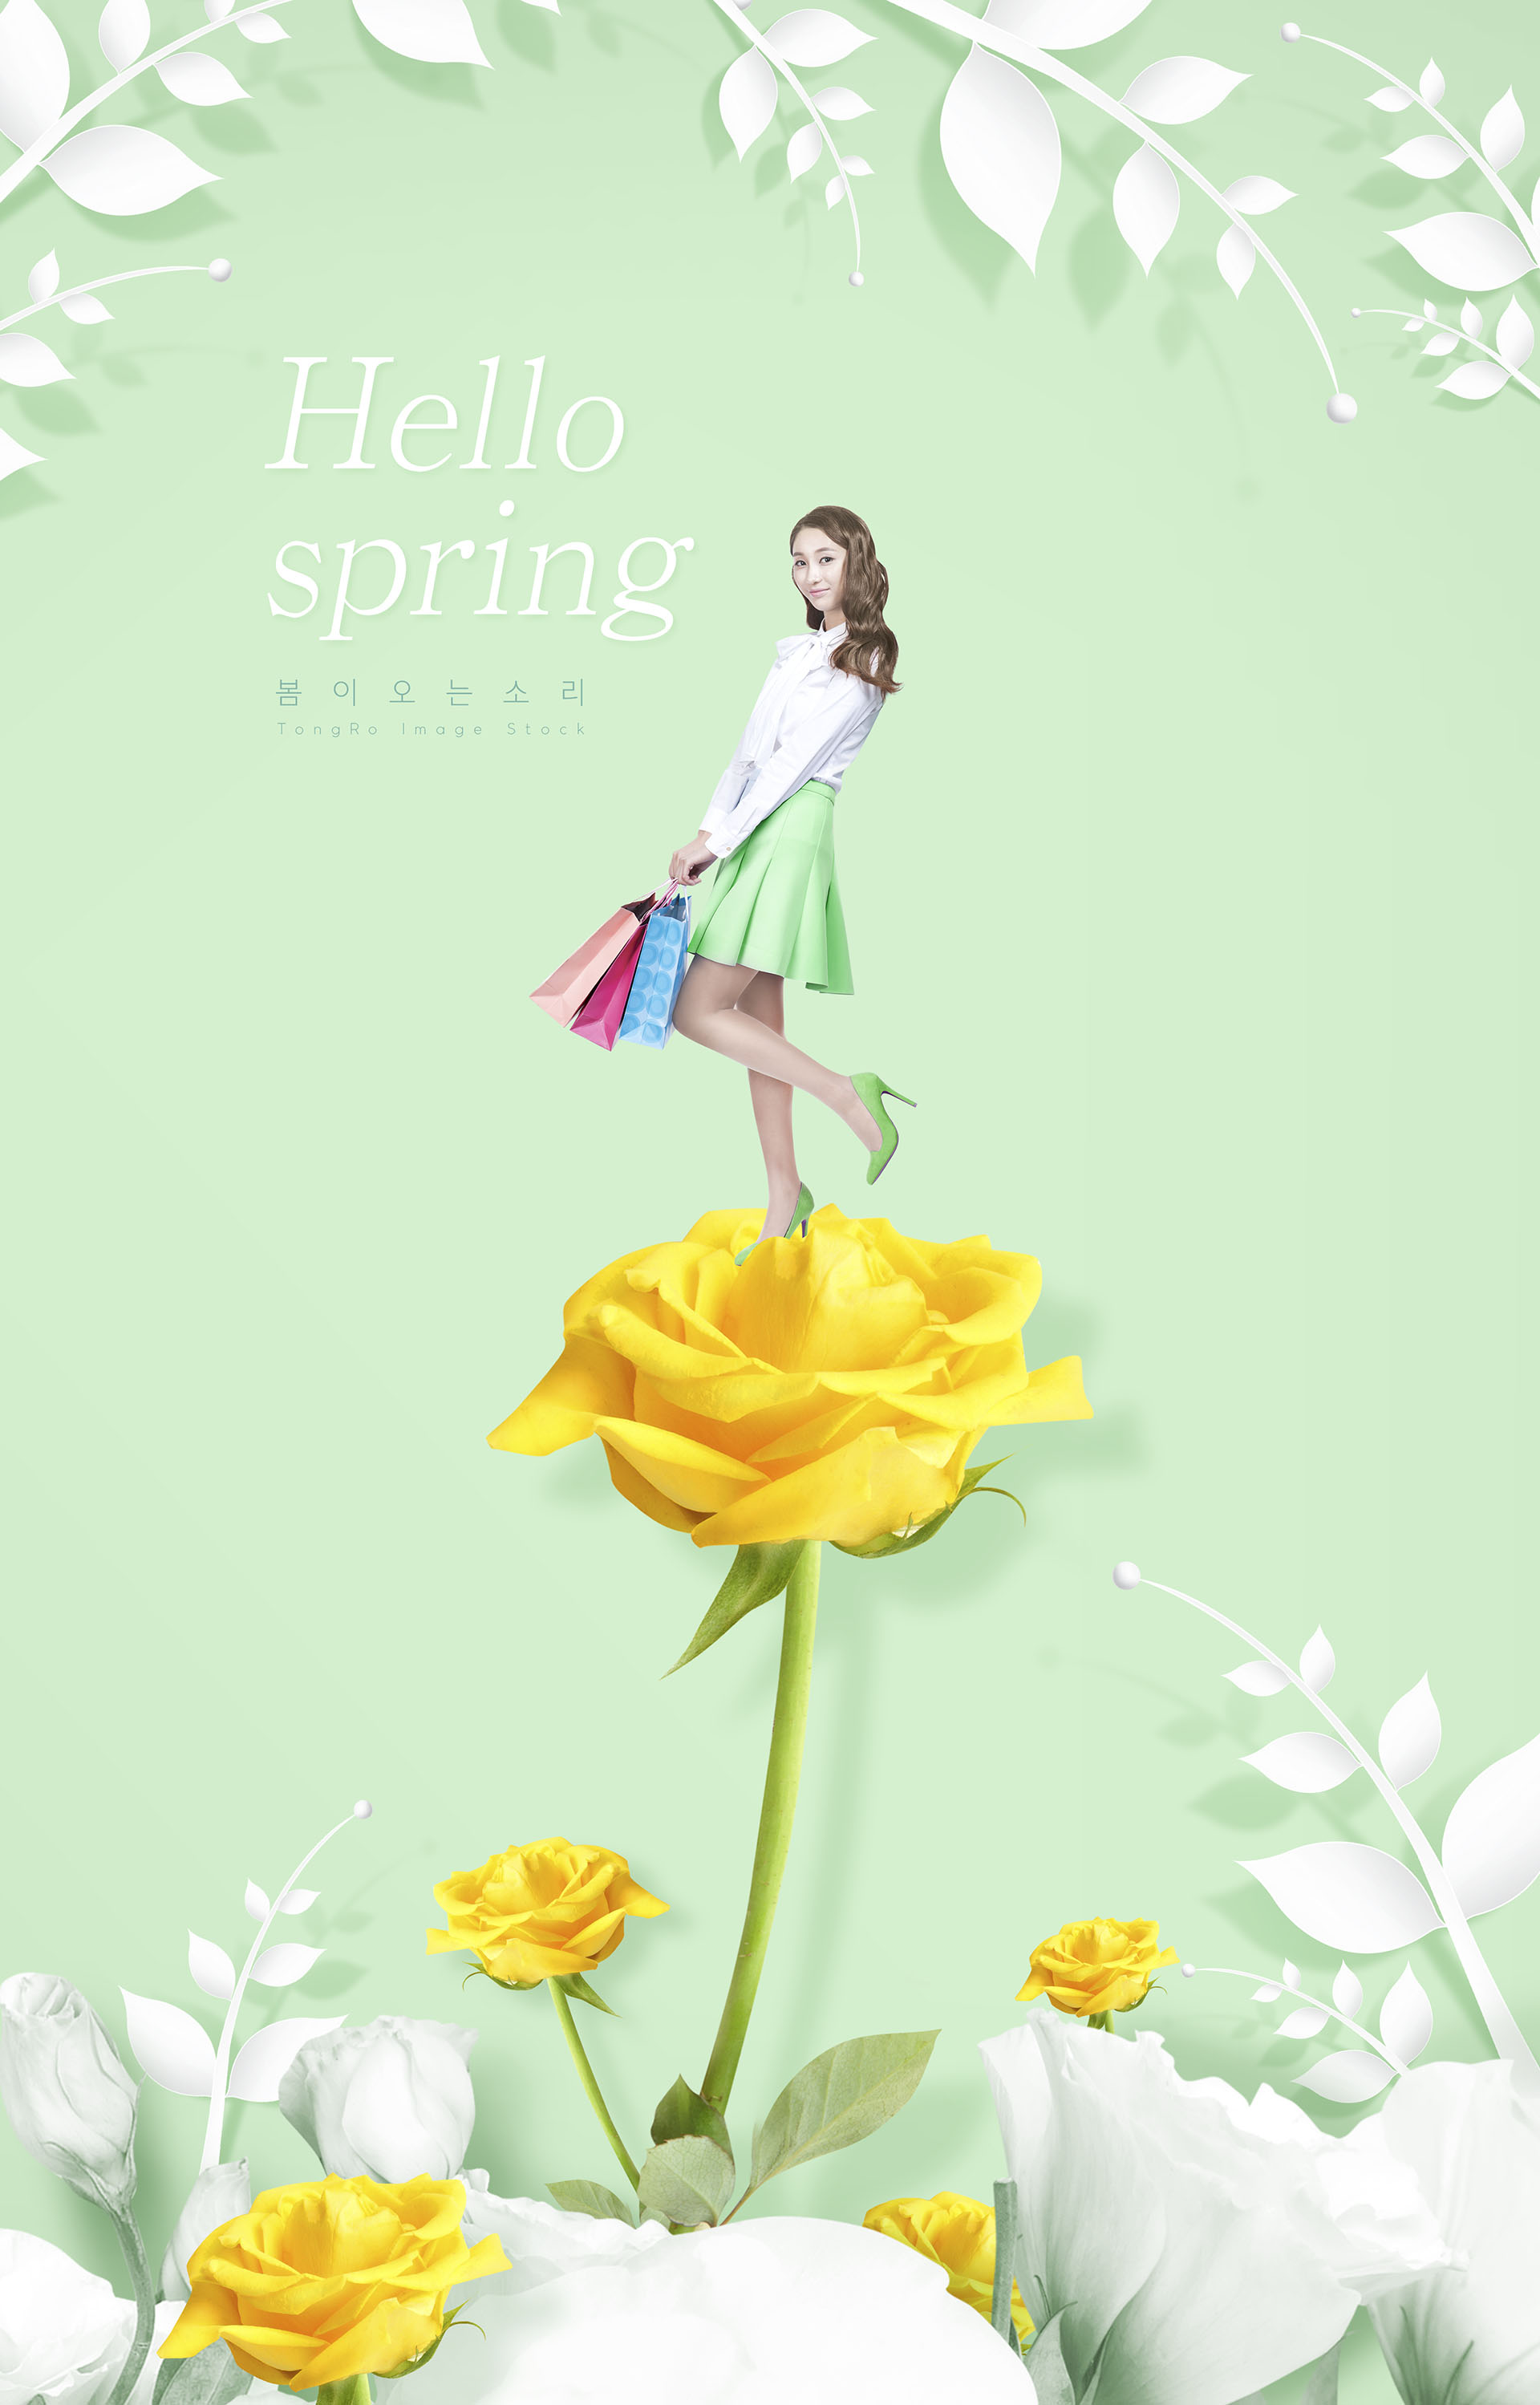 适合春季春天38节宣传的海报模板下载[PSD]插图(8)